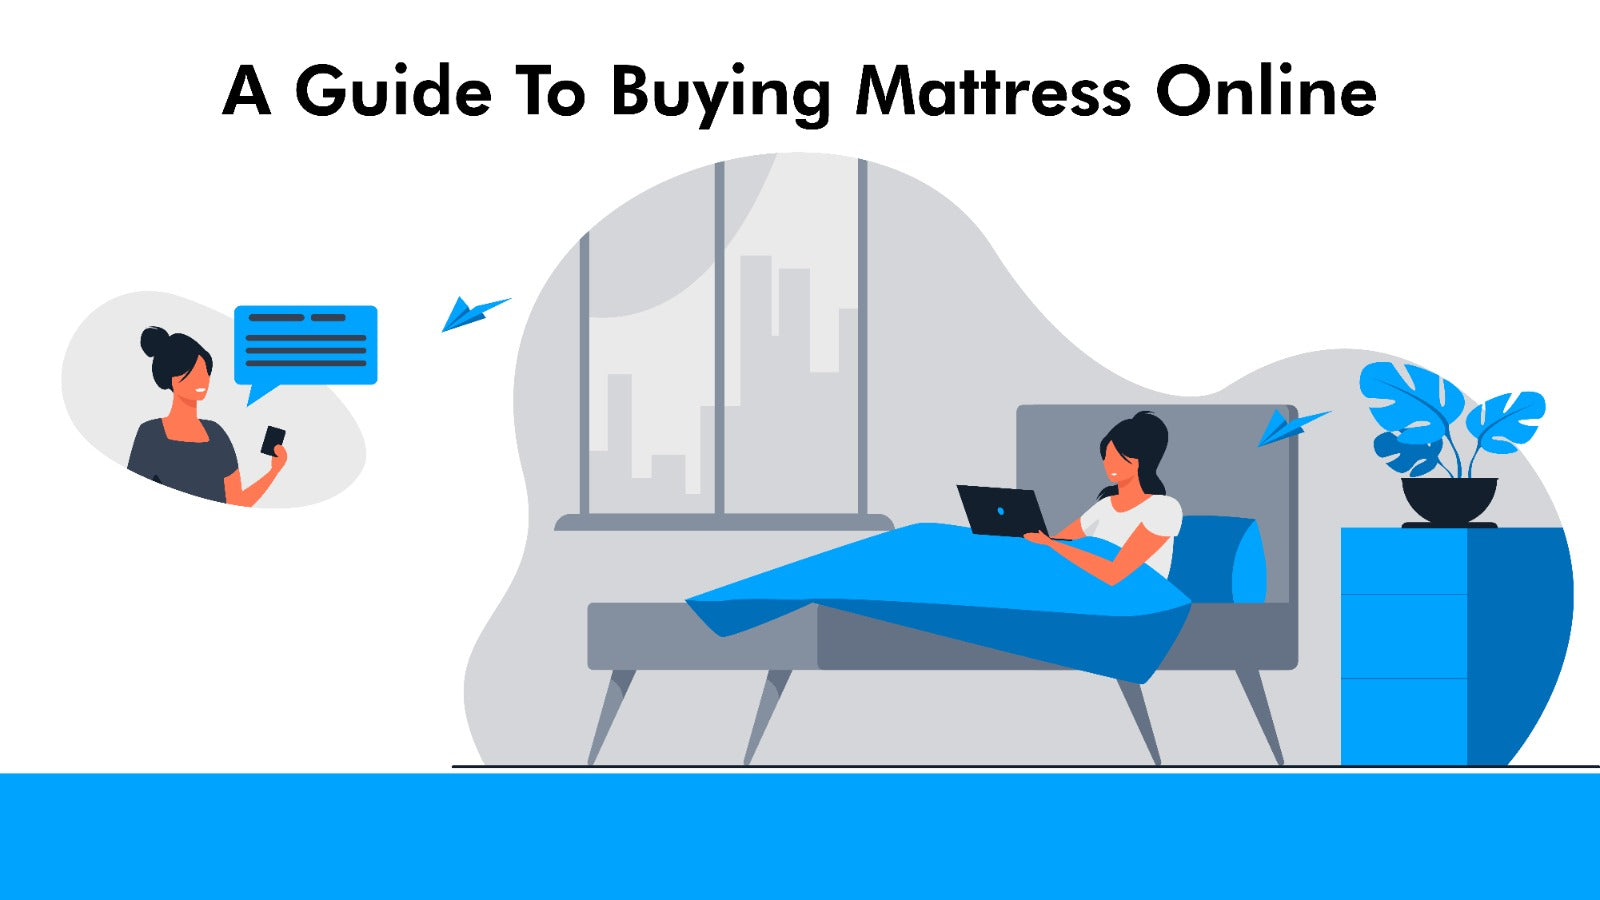 online mattress firms leave rivals sleepless